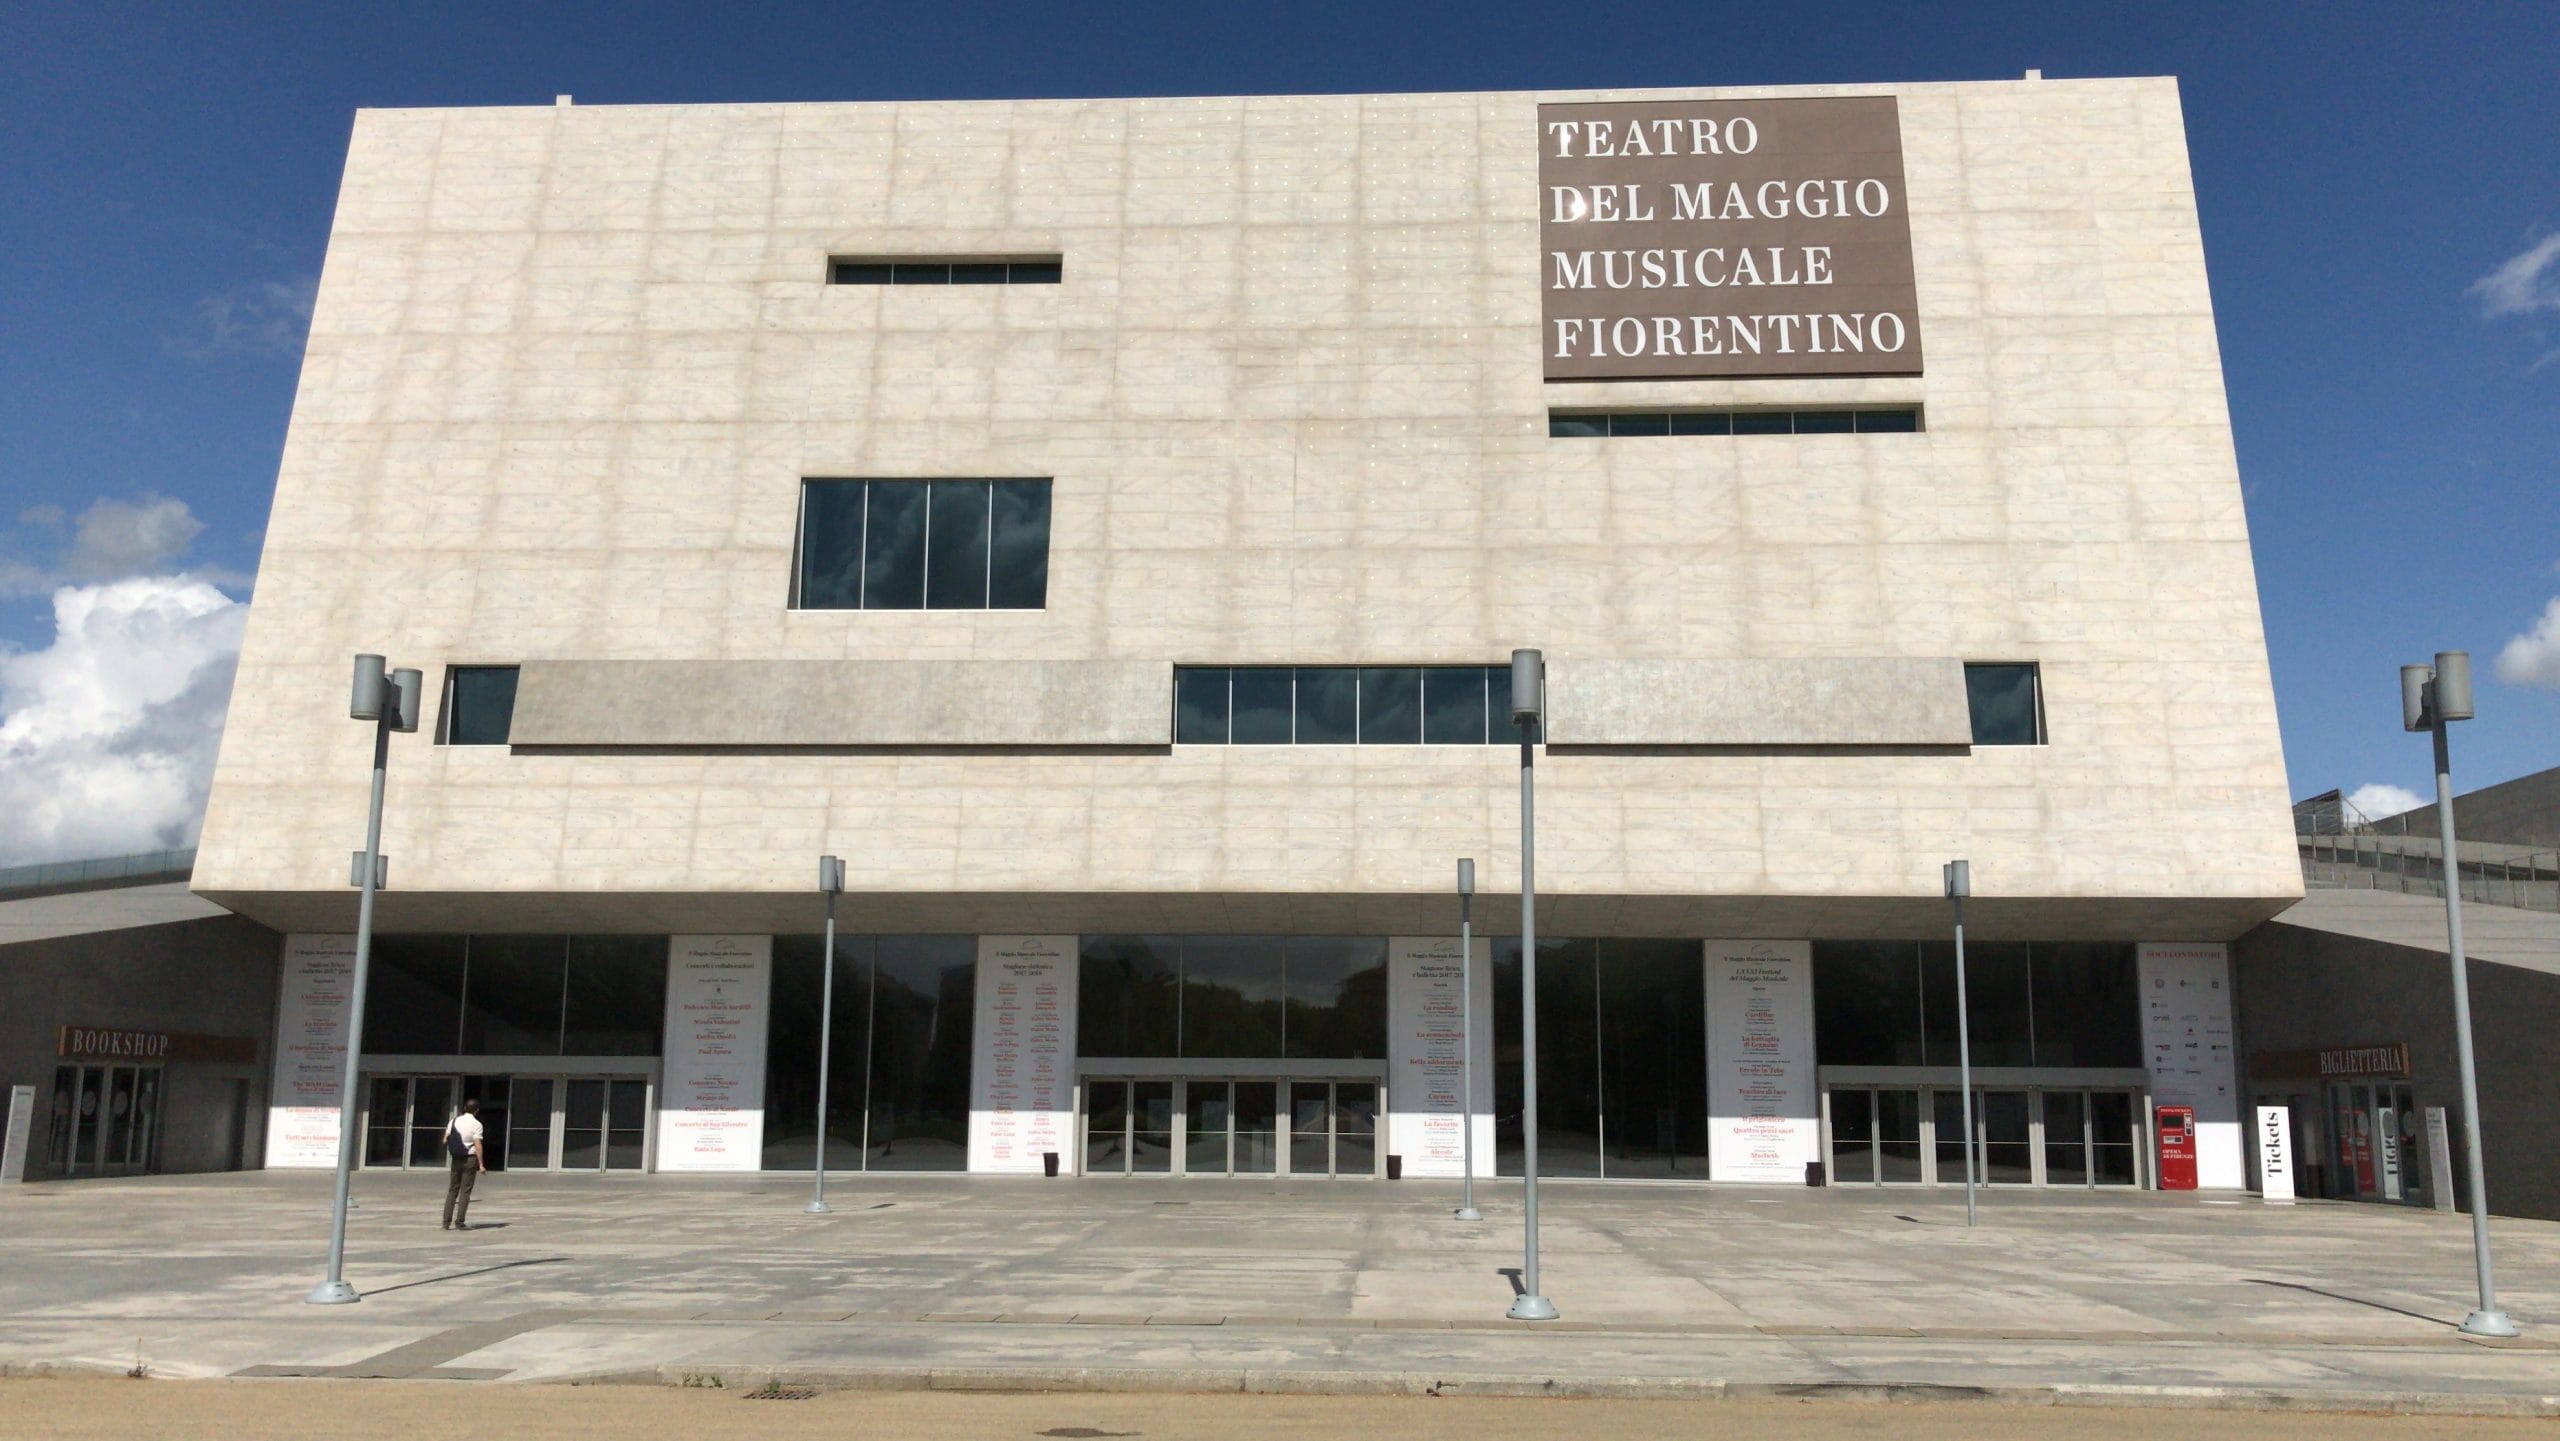 Musica: il Teatro del Maggio Musicale Fiorentino lancia “L’archivio dei tesori” online